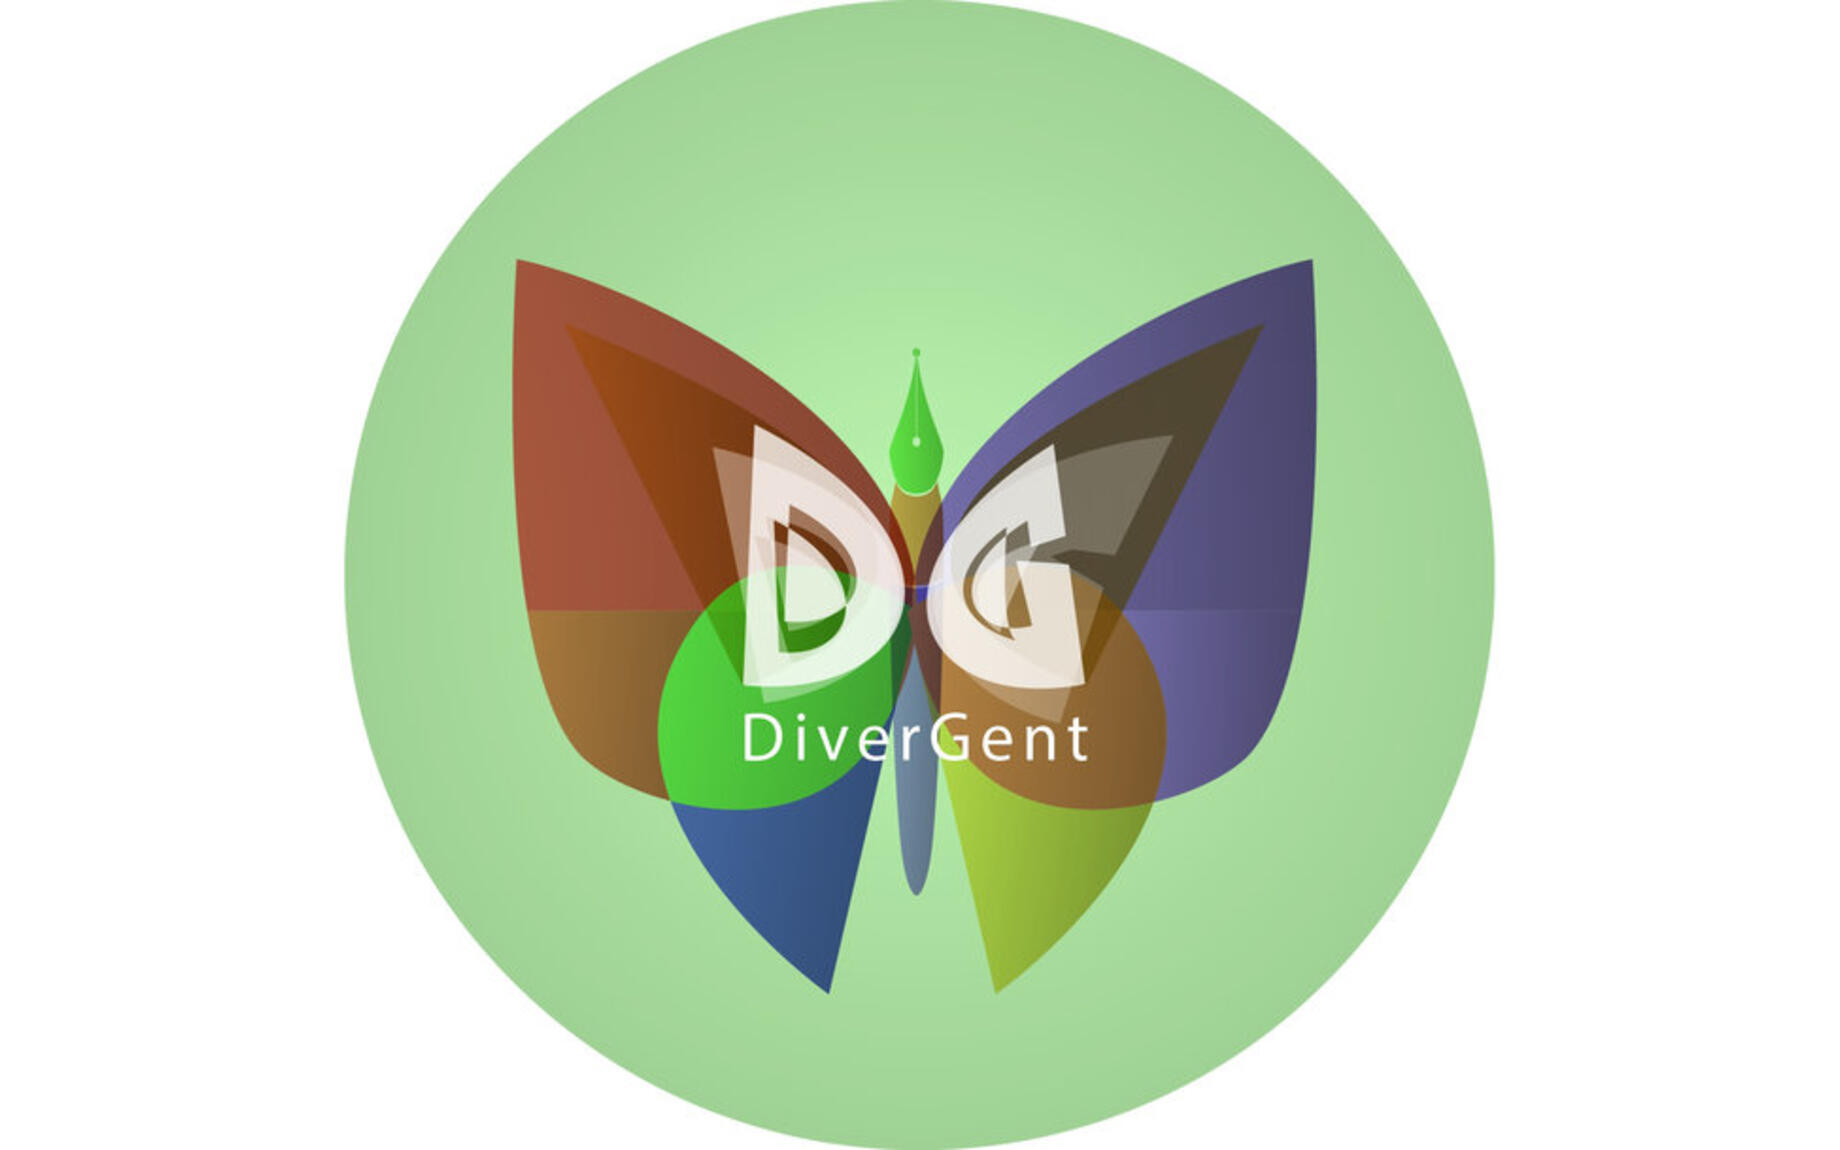 DiverGent